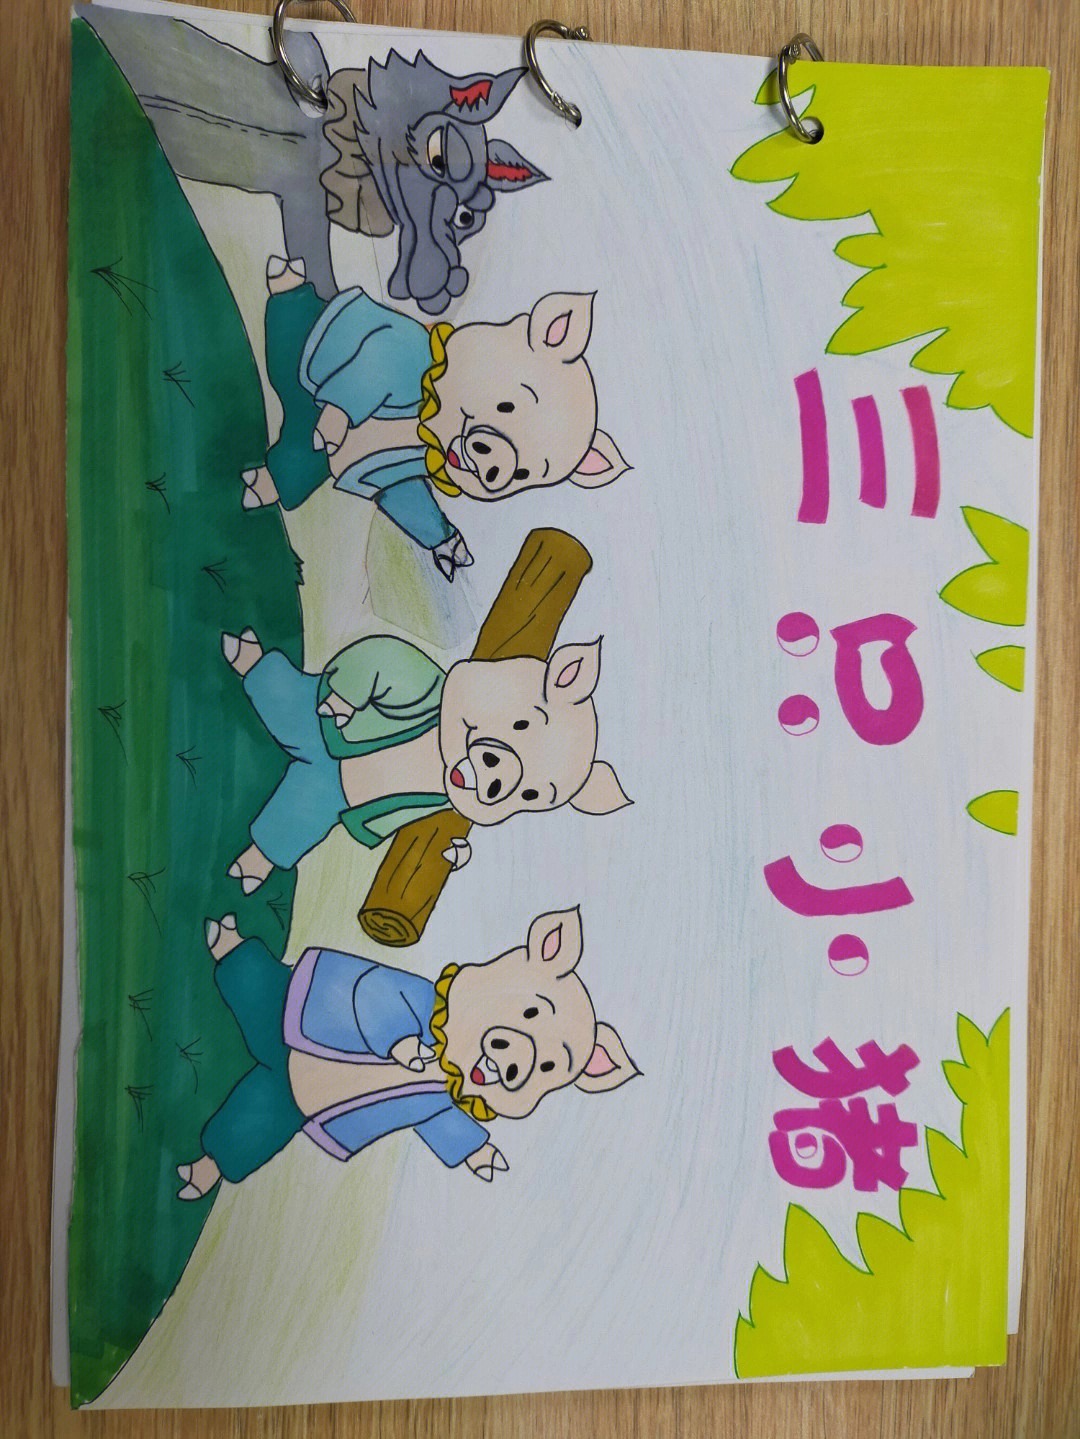 三只小猪图画书鉴赏图片